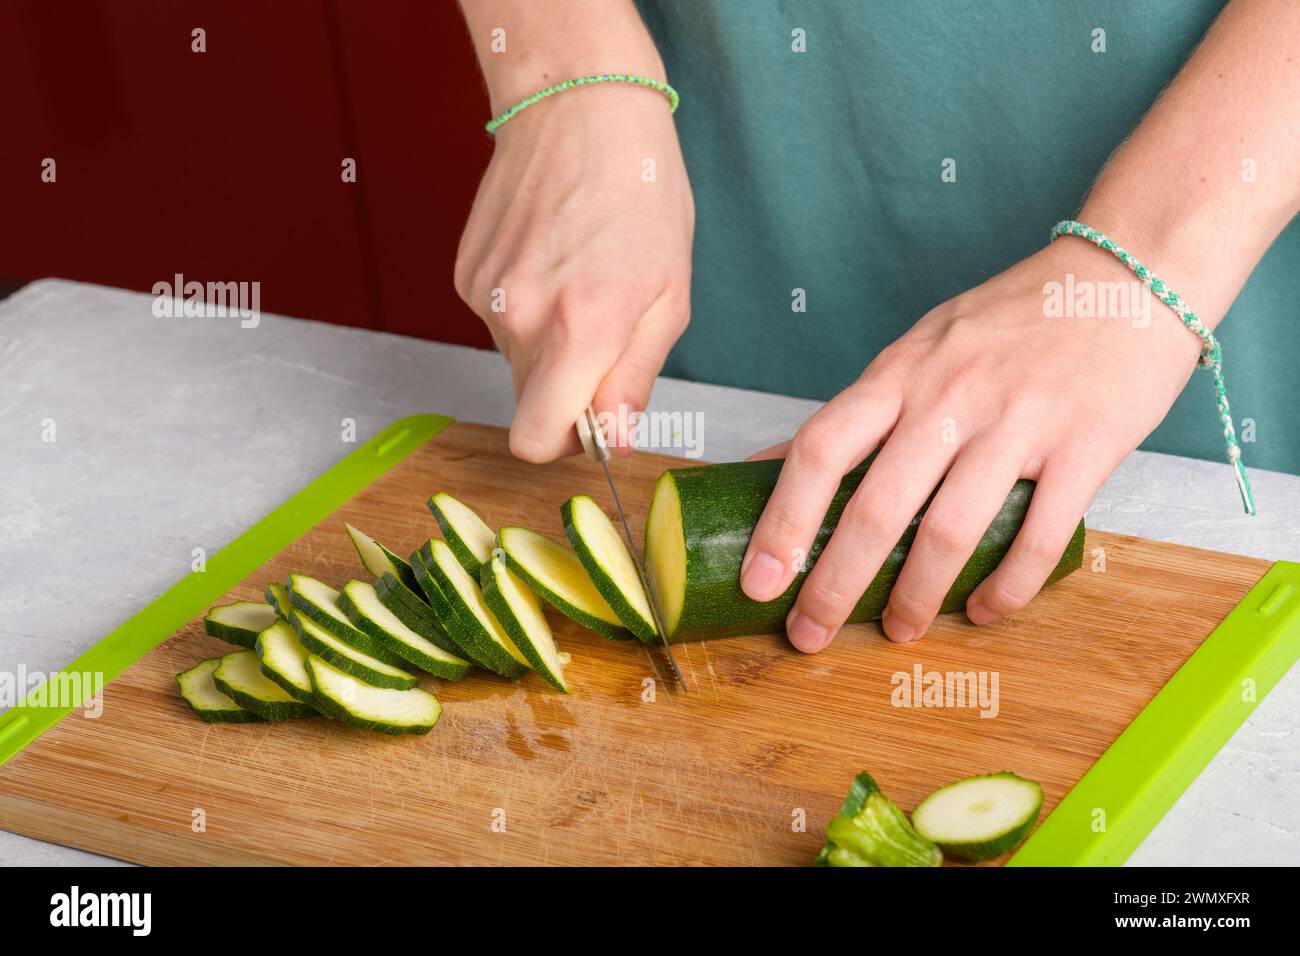 Mains féminines authentiques coupant les courgettes sur une planche à découper en bois sur la table de cuisine. Femme dans le tablier coupé courgettes pour préparer la nourriture. Végétalien et végétarien Banque D'Images